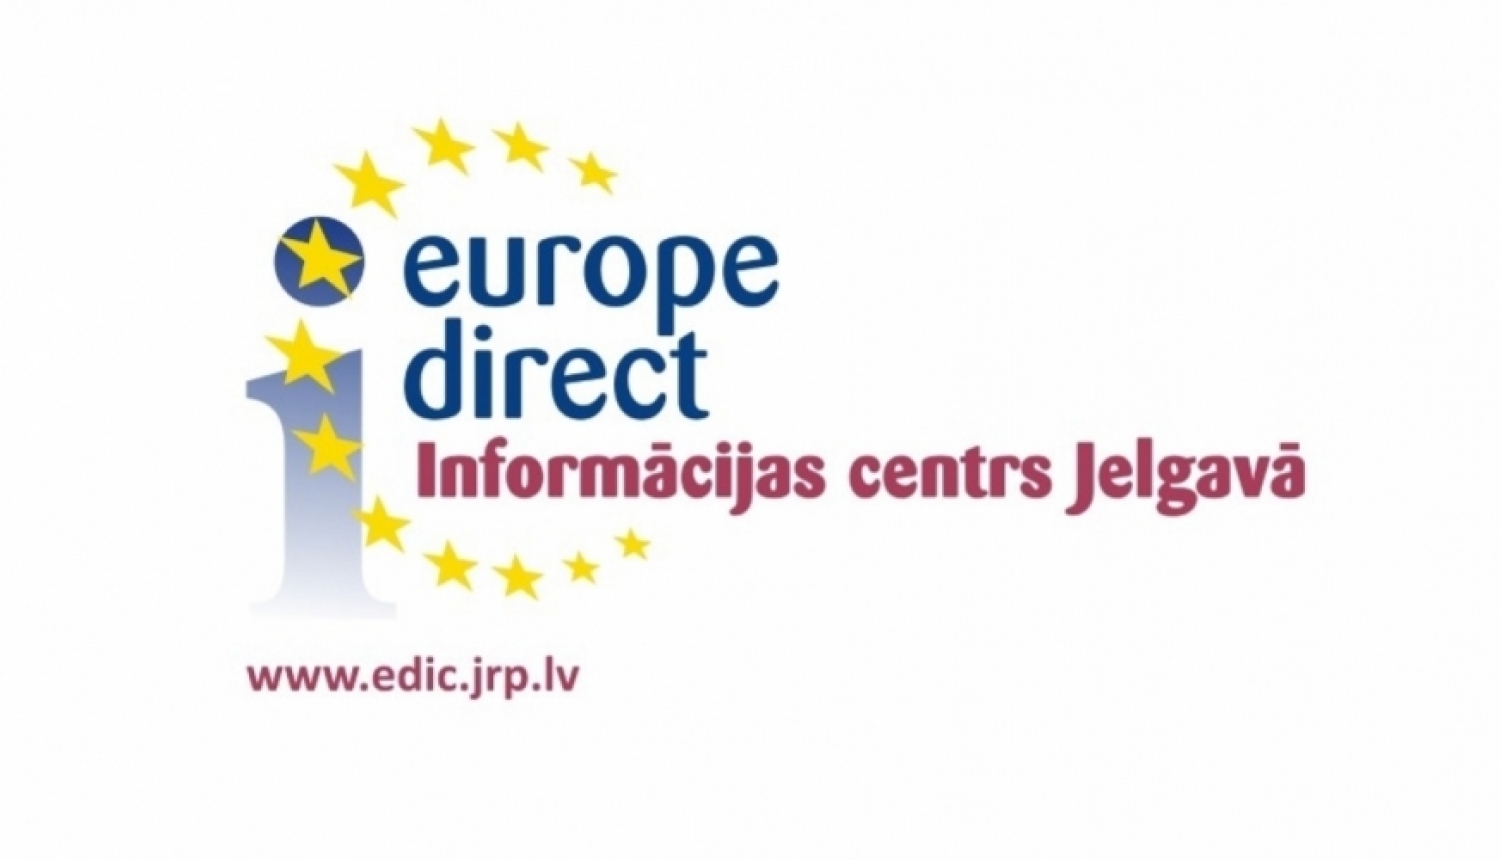 Europe Direct informācijas centrs Jelgavas novada pašvaldībā uzsācis jaunu projekta periodu